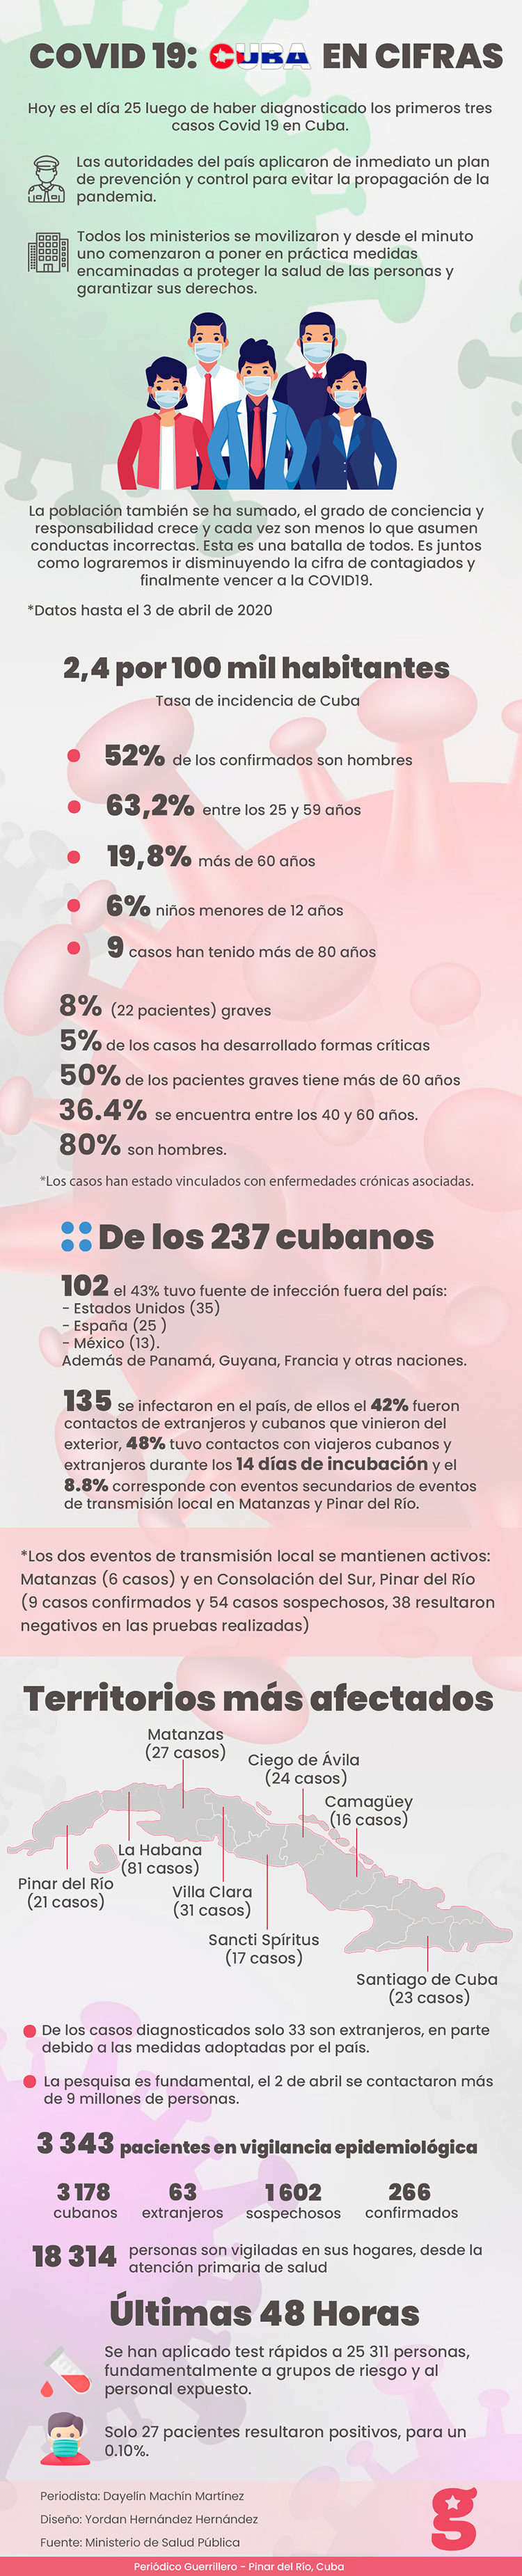 COVID 19: Cuba en cifras